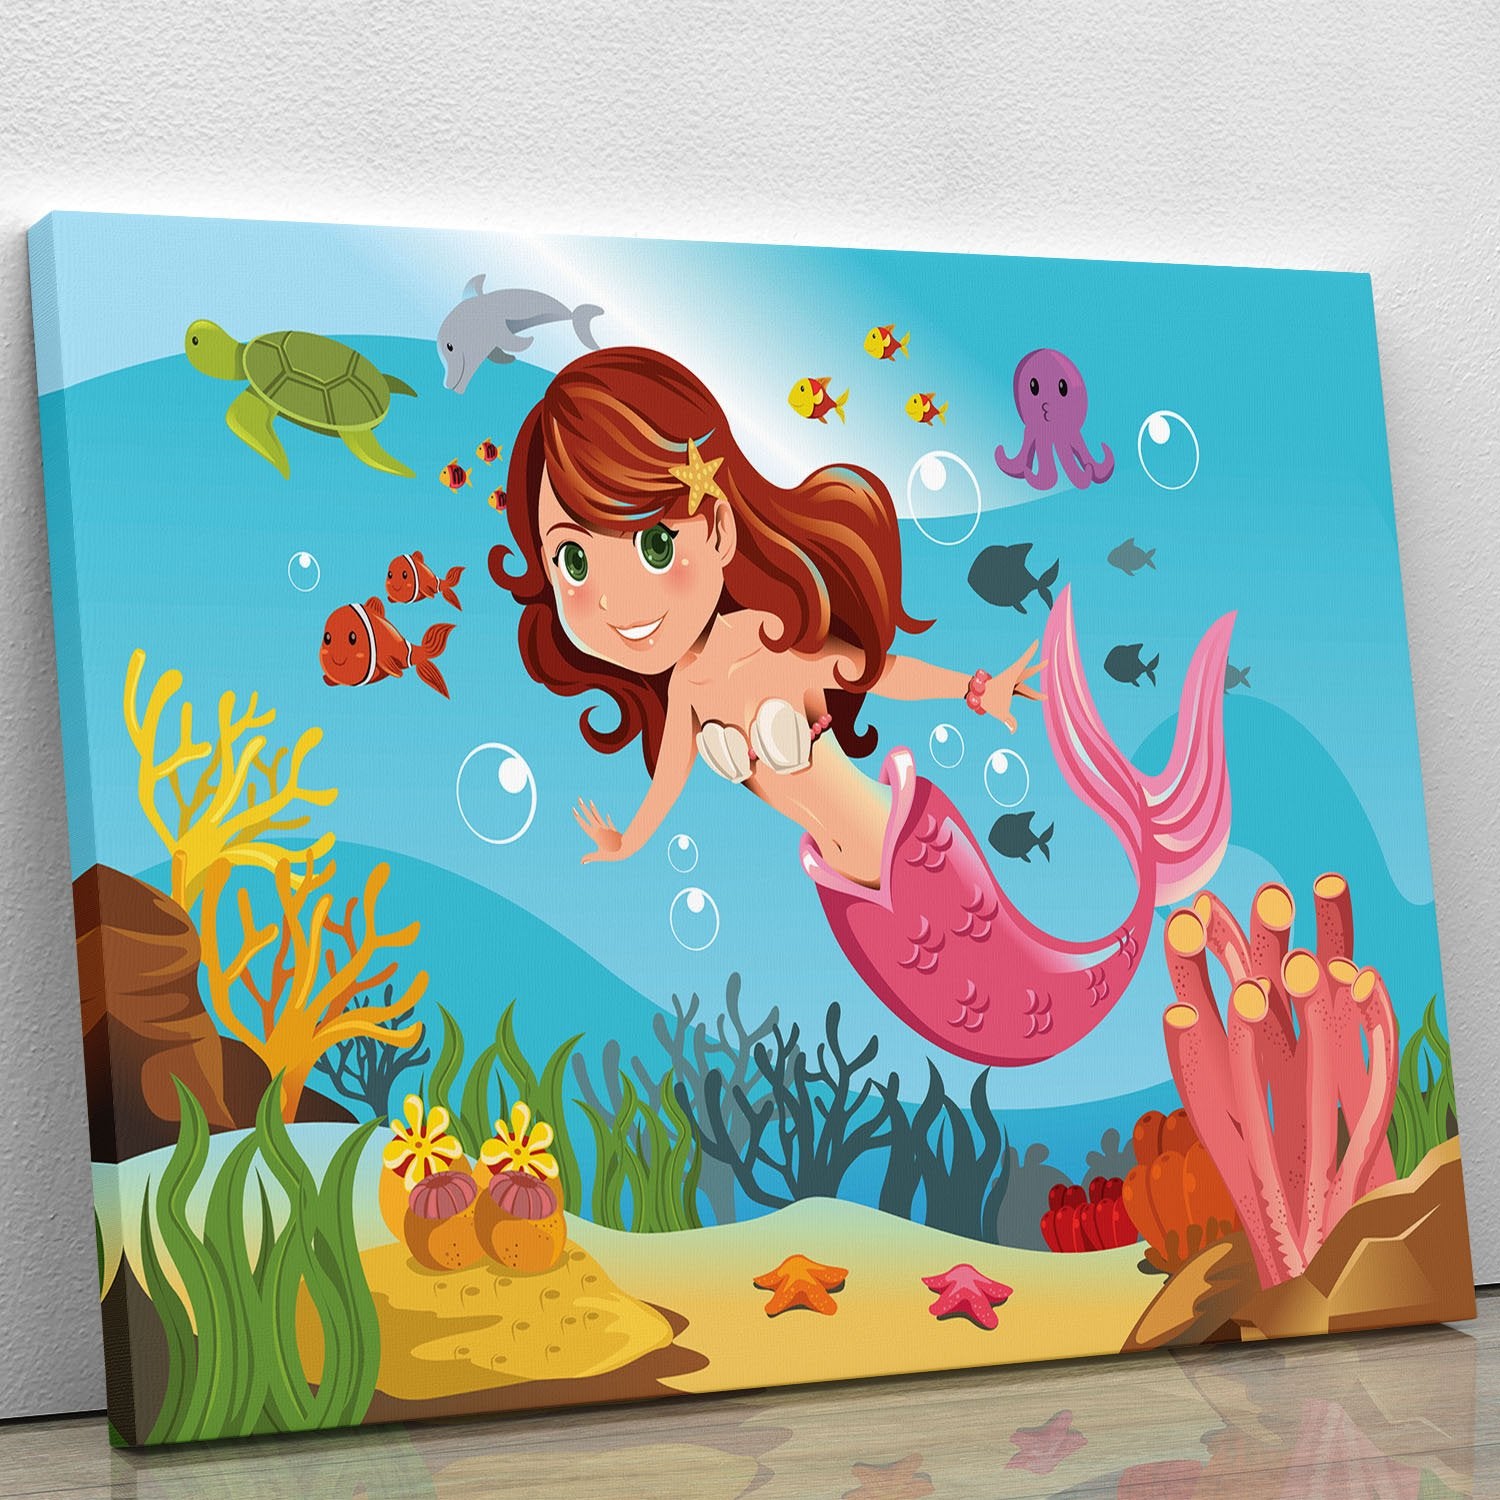 mermaid swimming underwater in the ocean Canvas Print or Poster